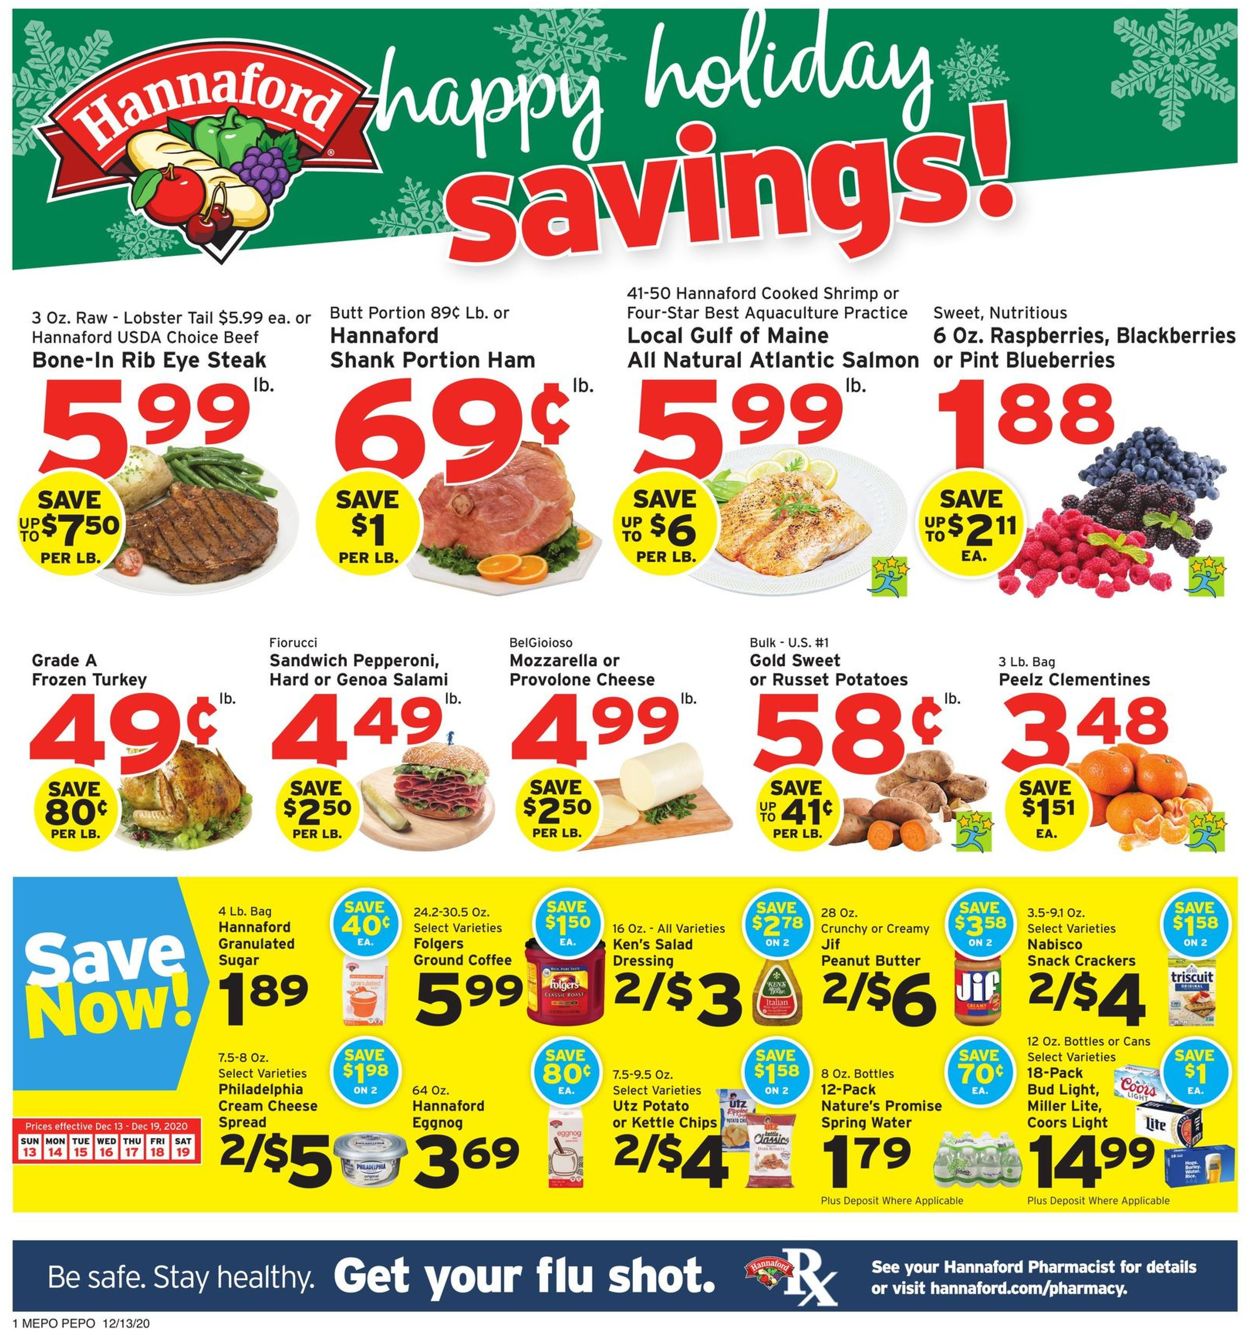 Hannaford Holiday Savings 2020 Weekly Ad Circular - valid 12/13-12/19/2020